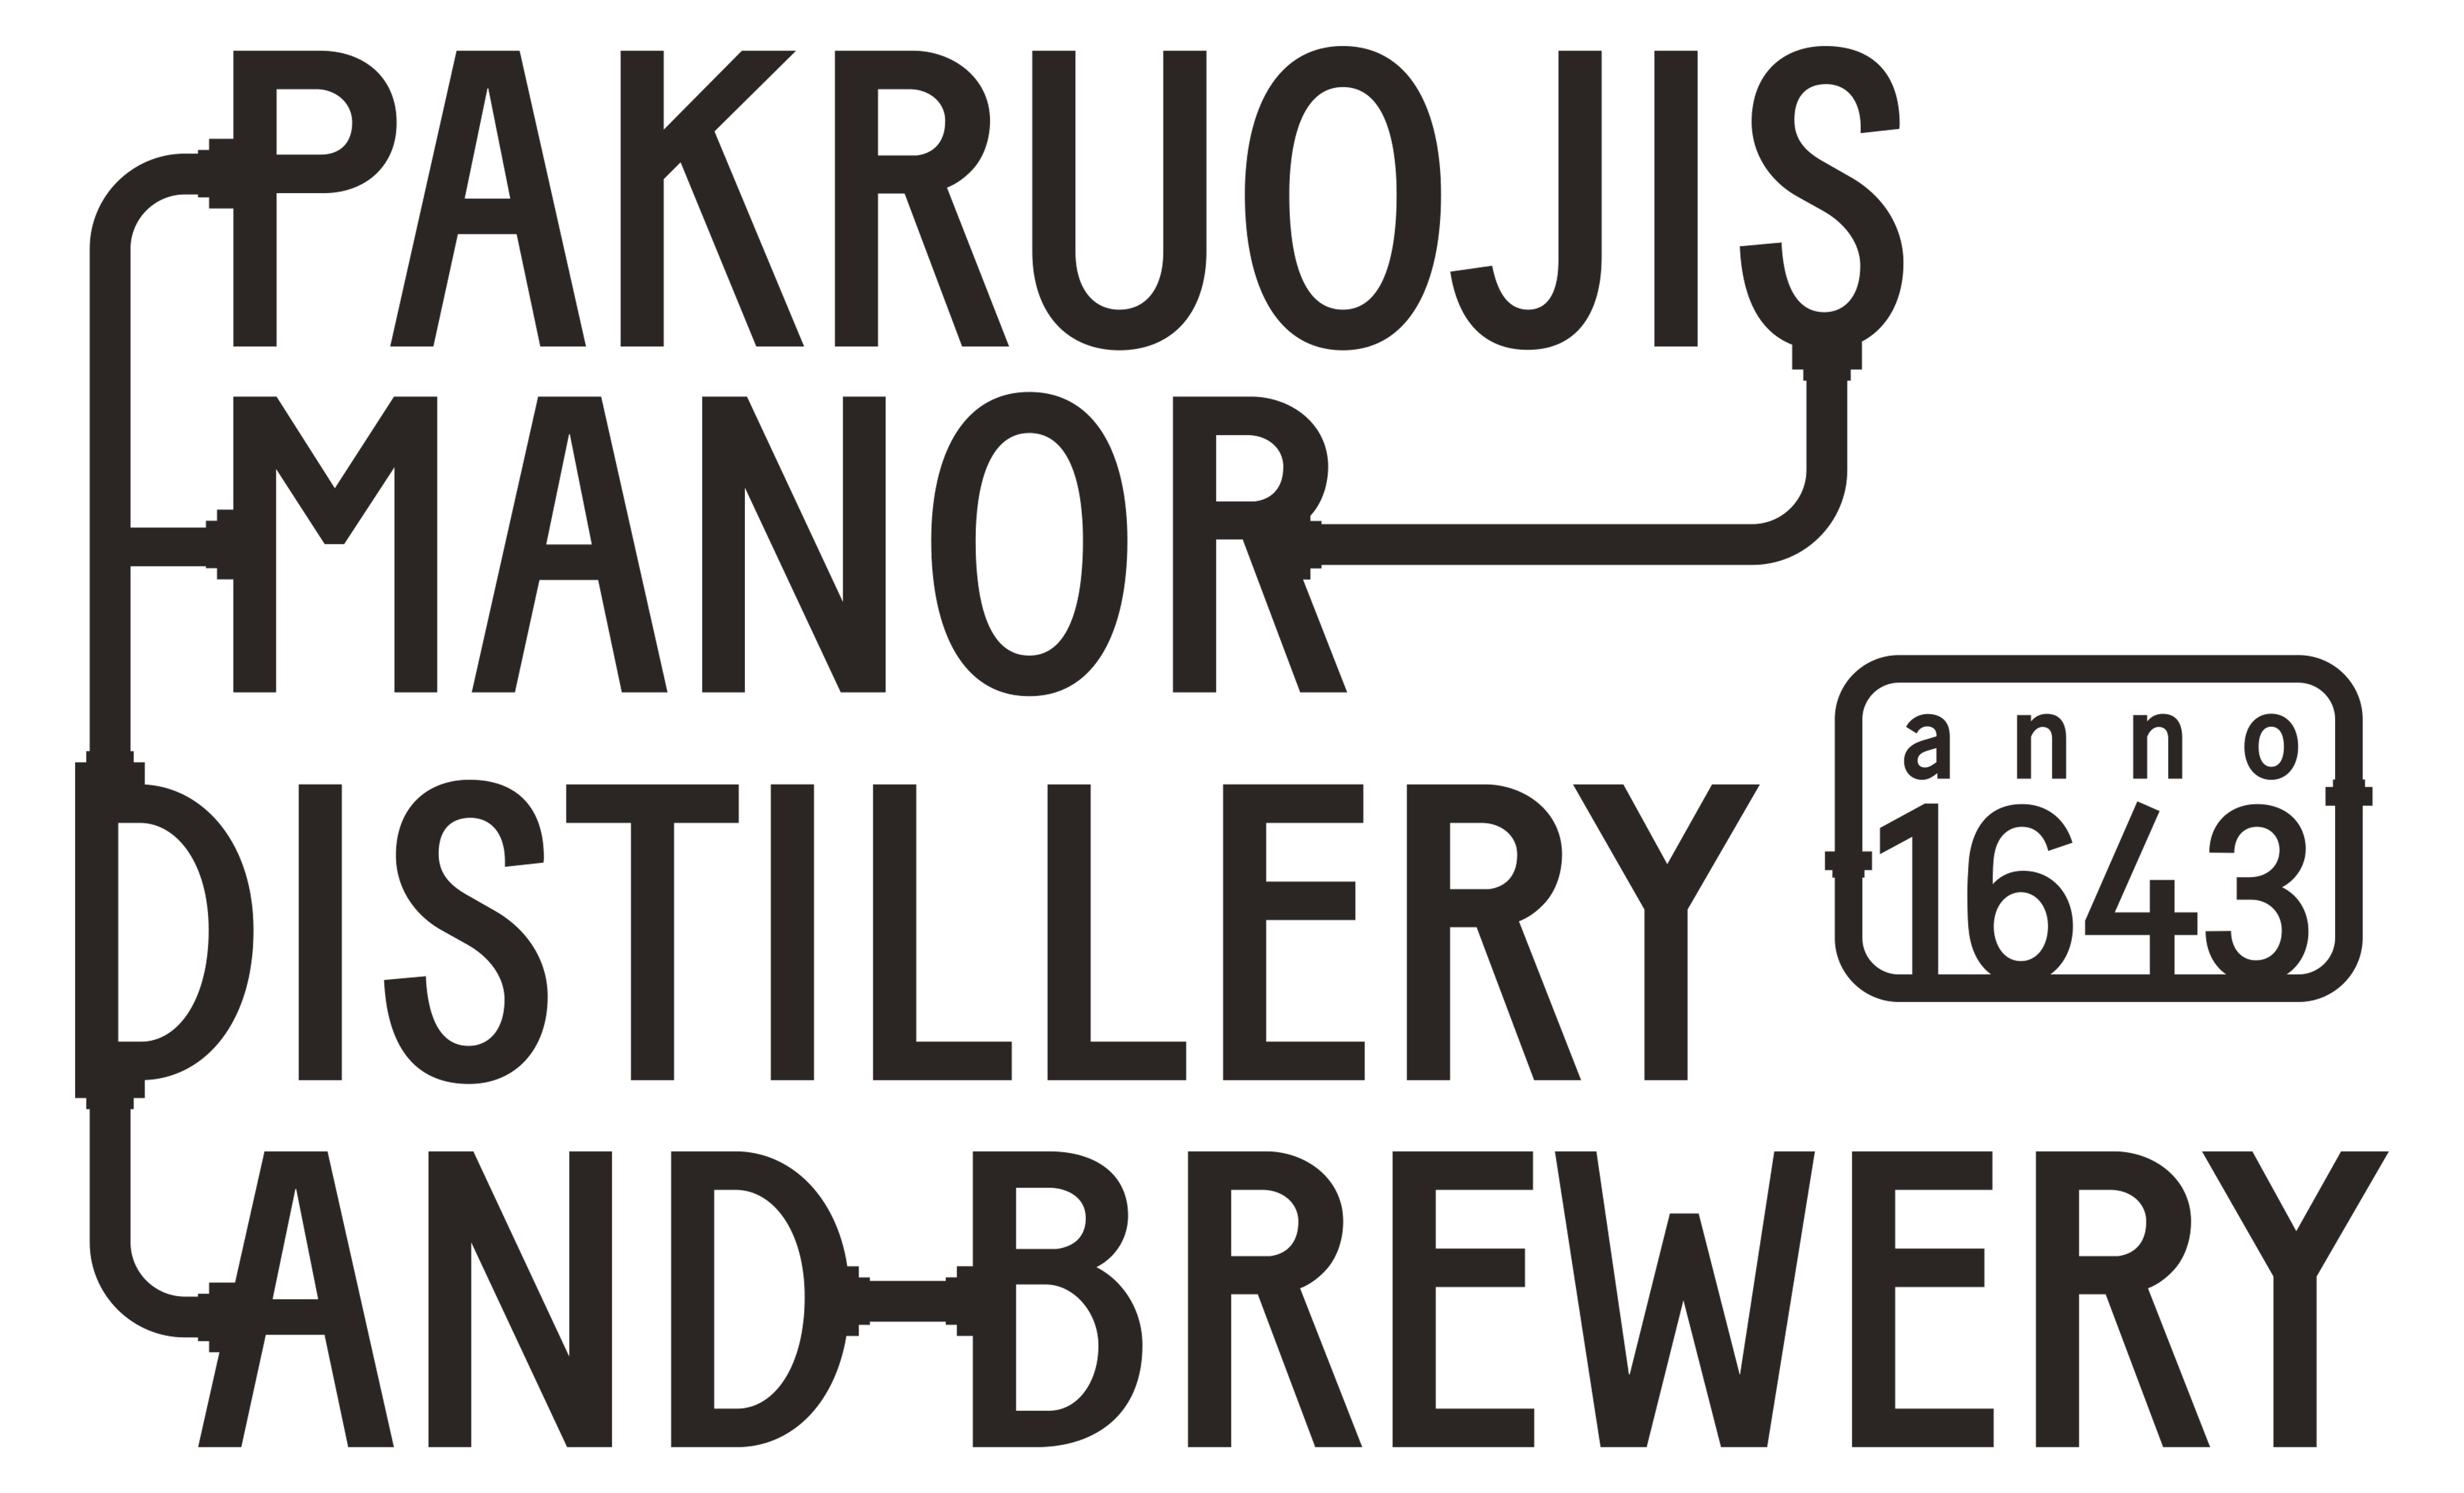 Pakruojis Manor Distillery and Brewery